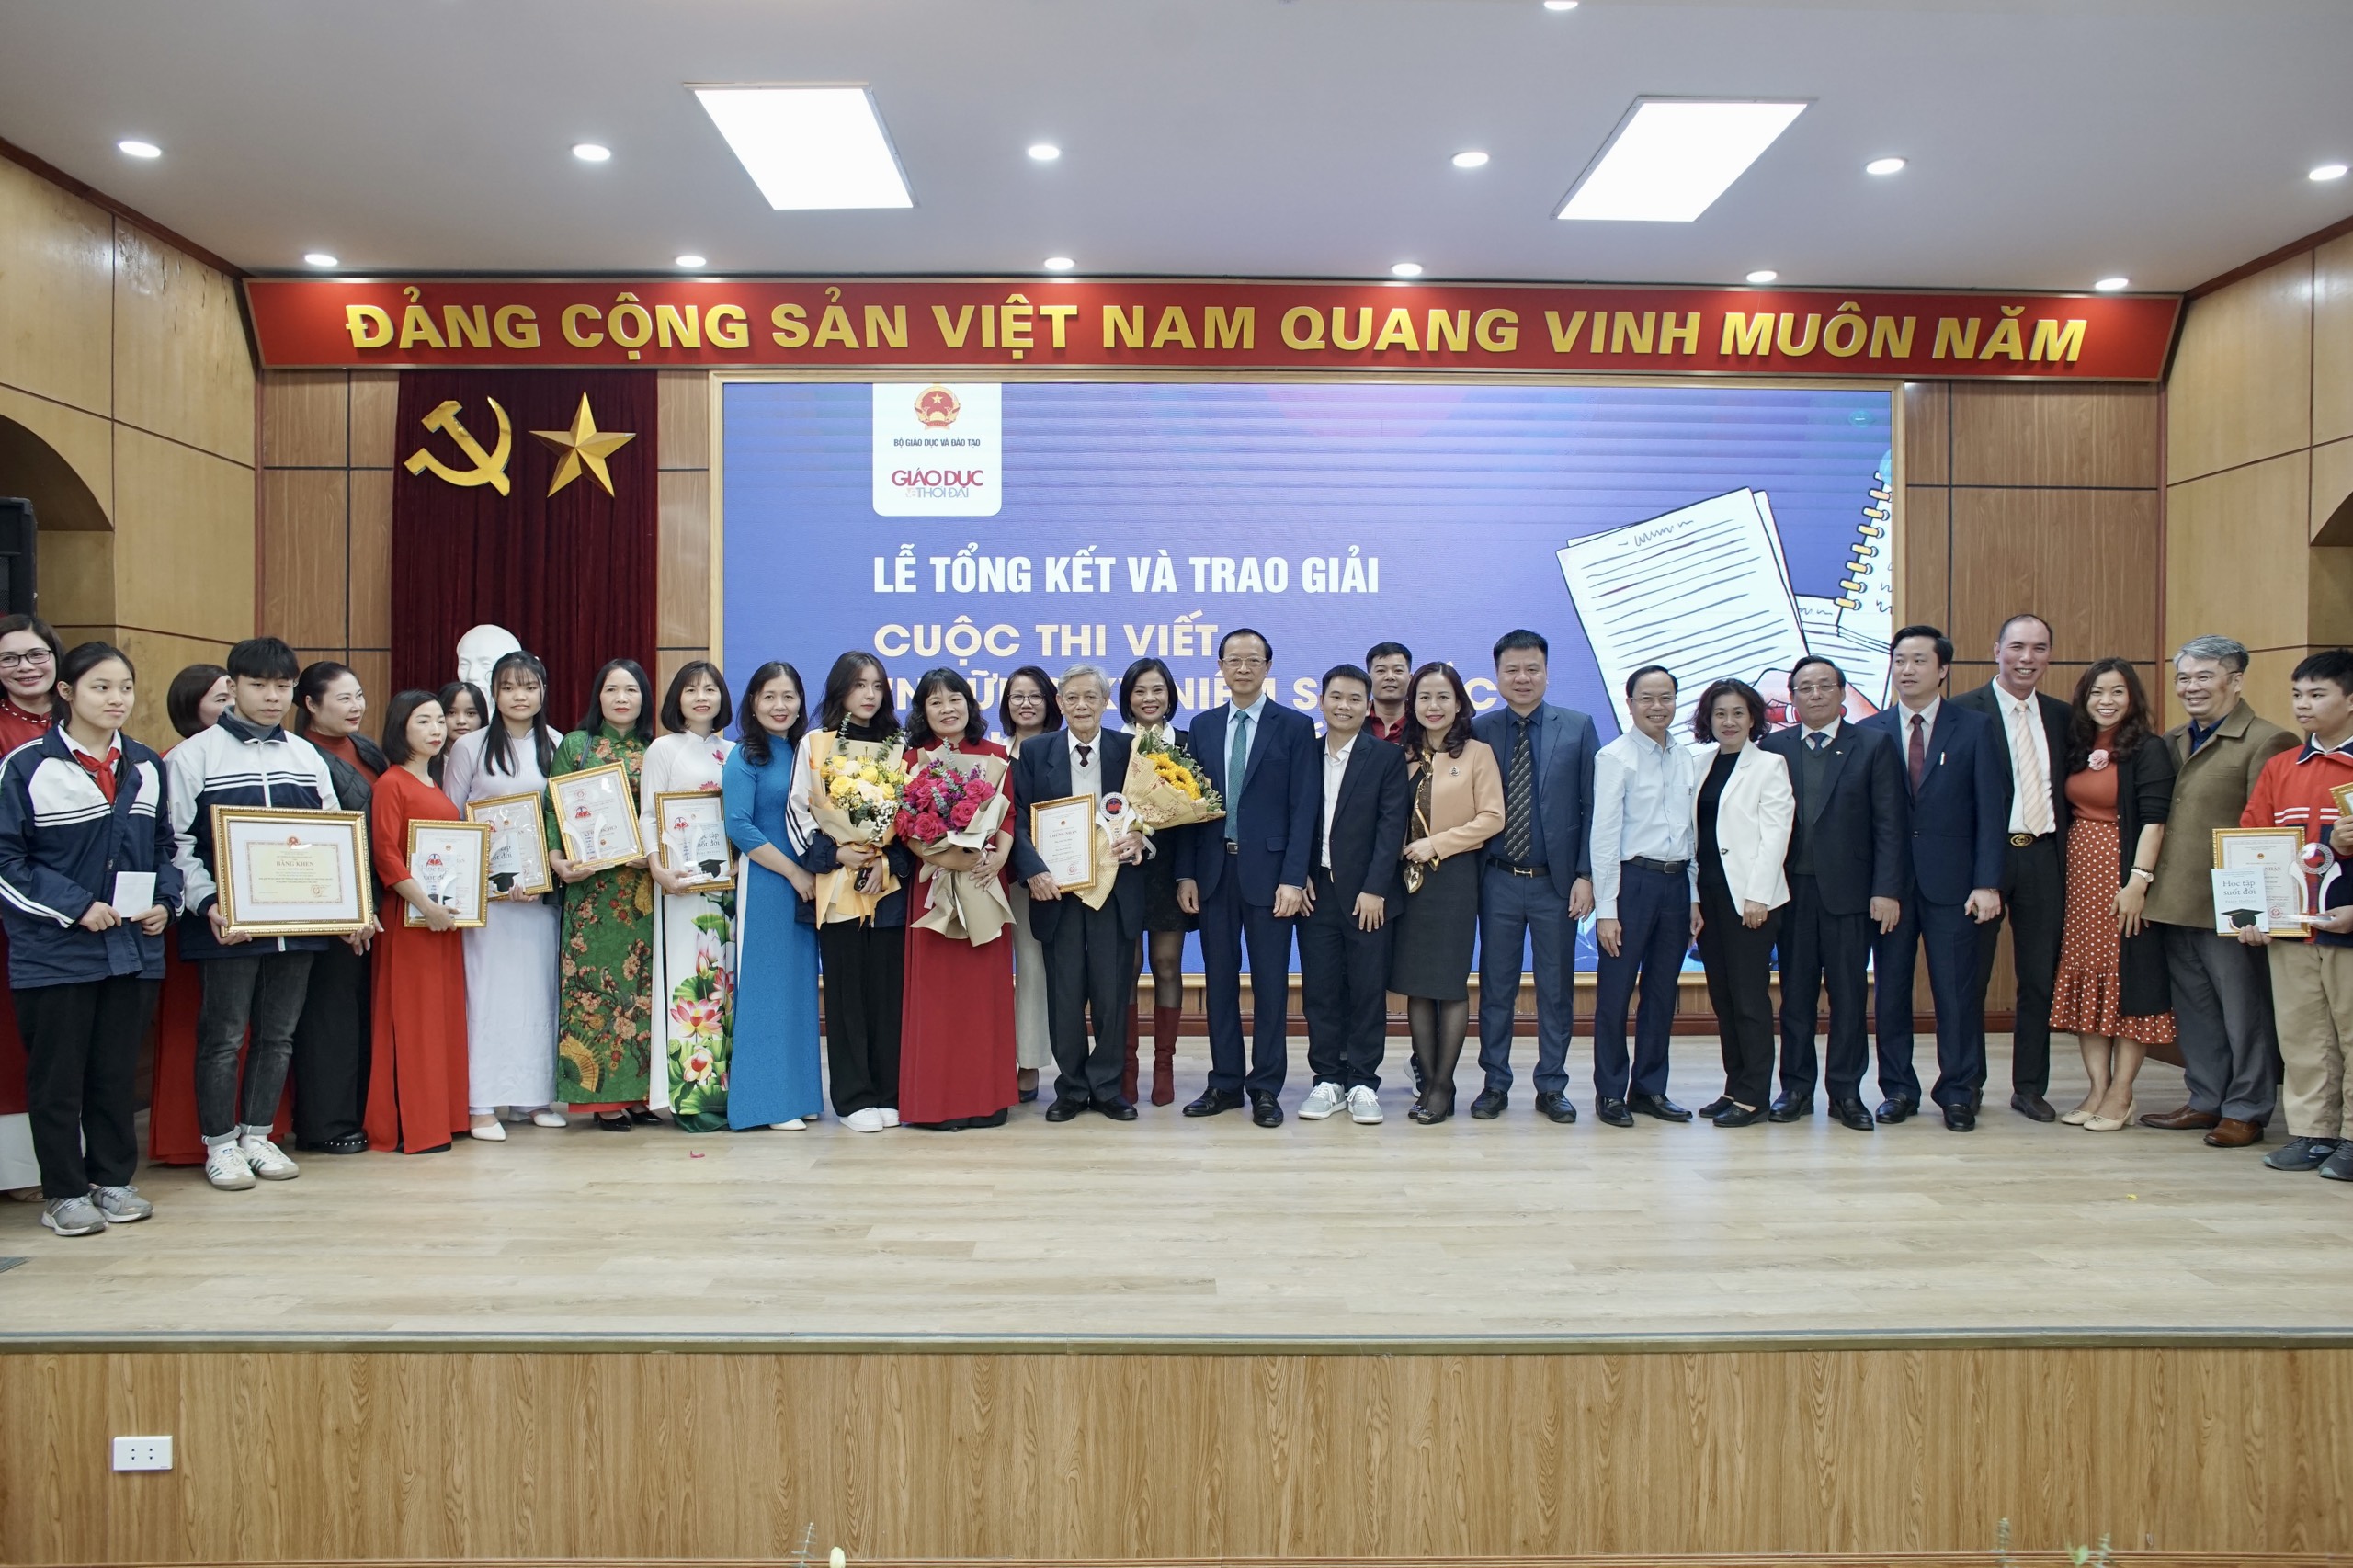 Thứ trưởng Phạm Ngọc Thưởng, các đại biểu dự buổi Lễ chụp ảnh lưu niệm cùng tác tác giả đạt giải.